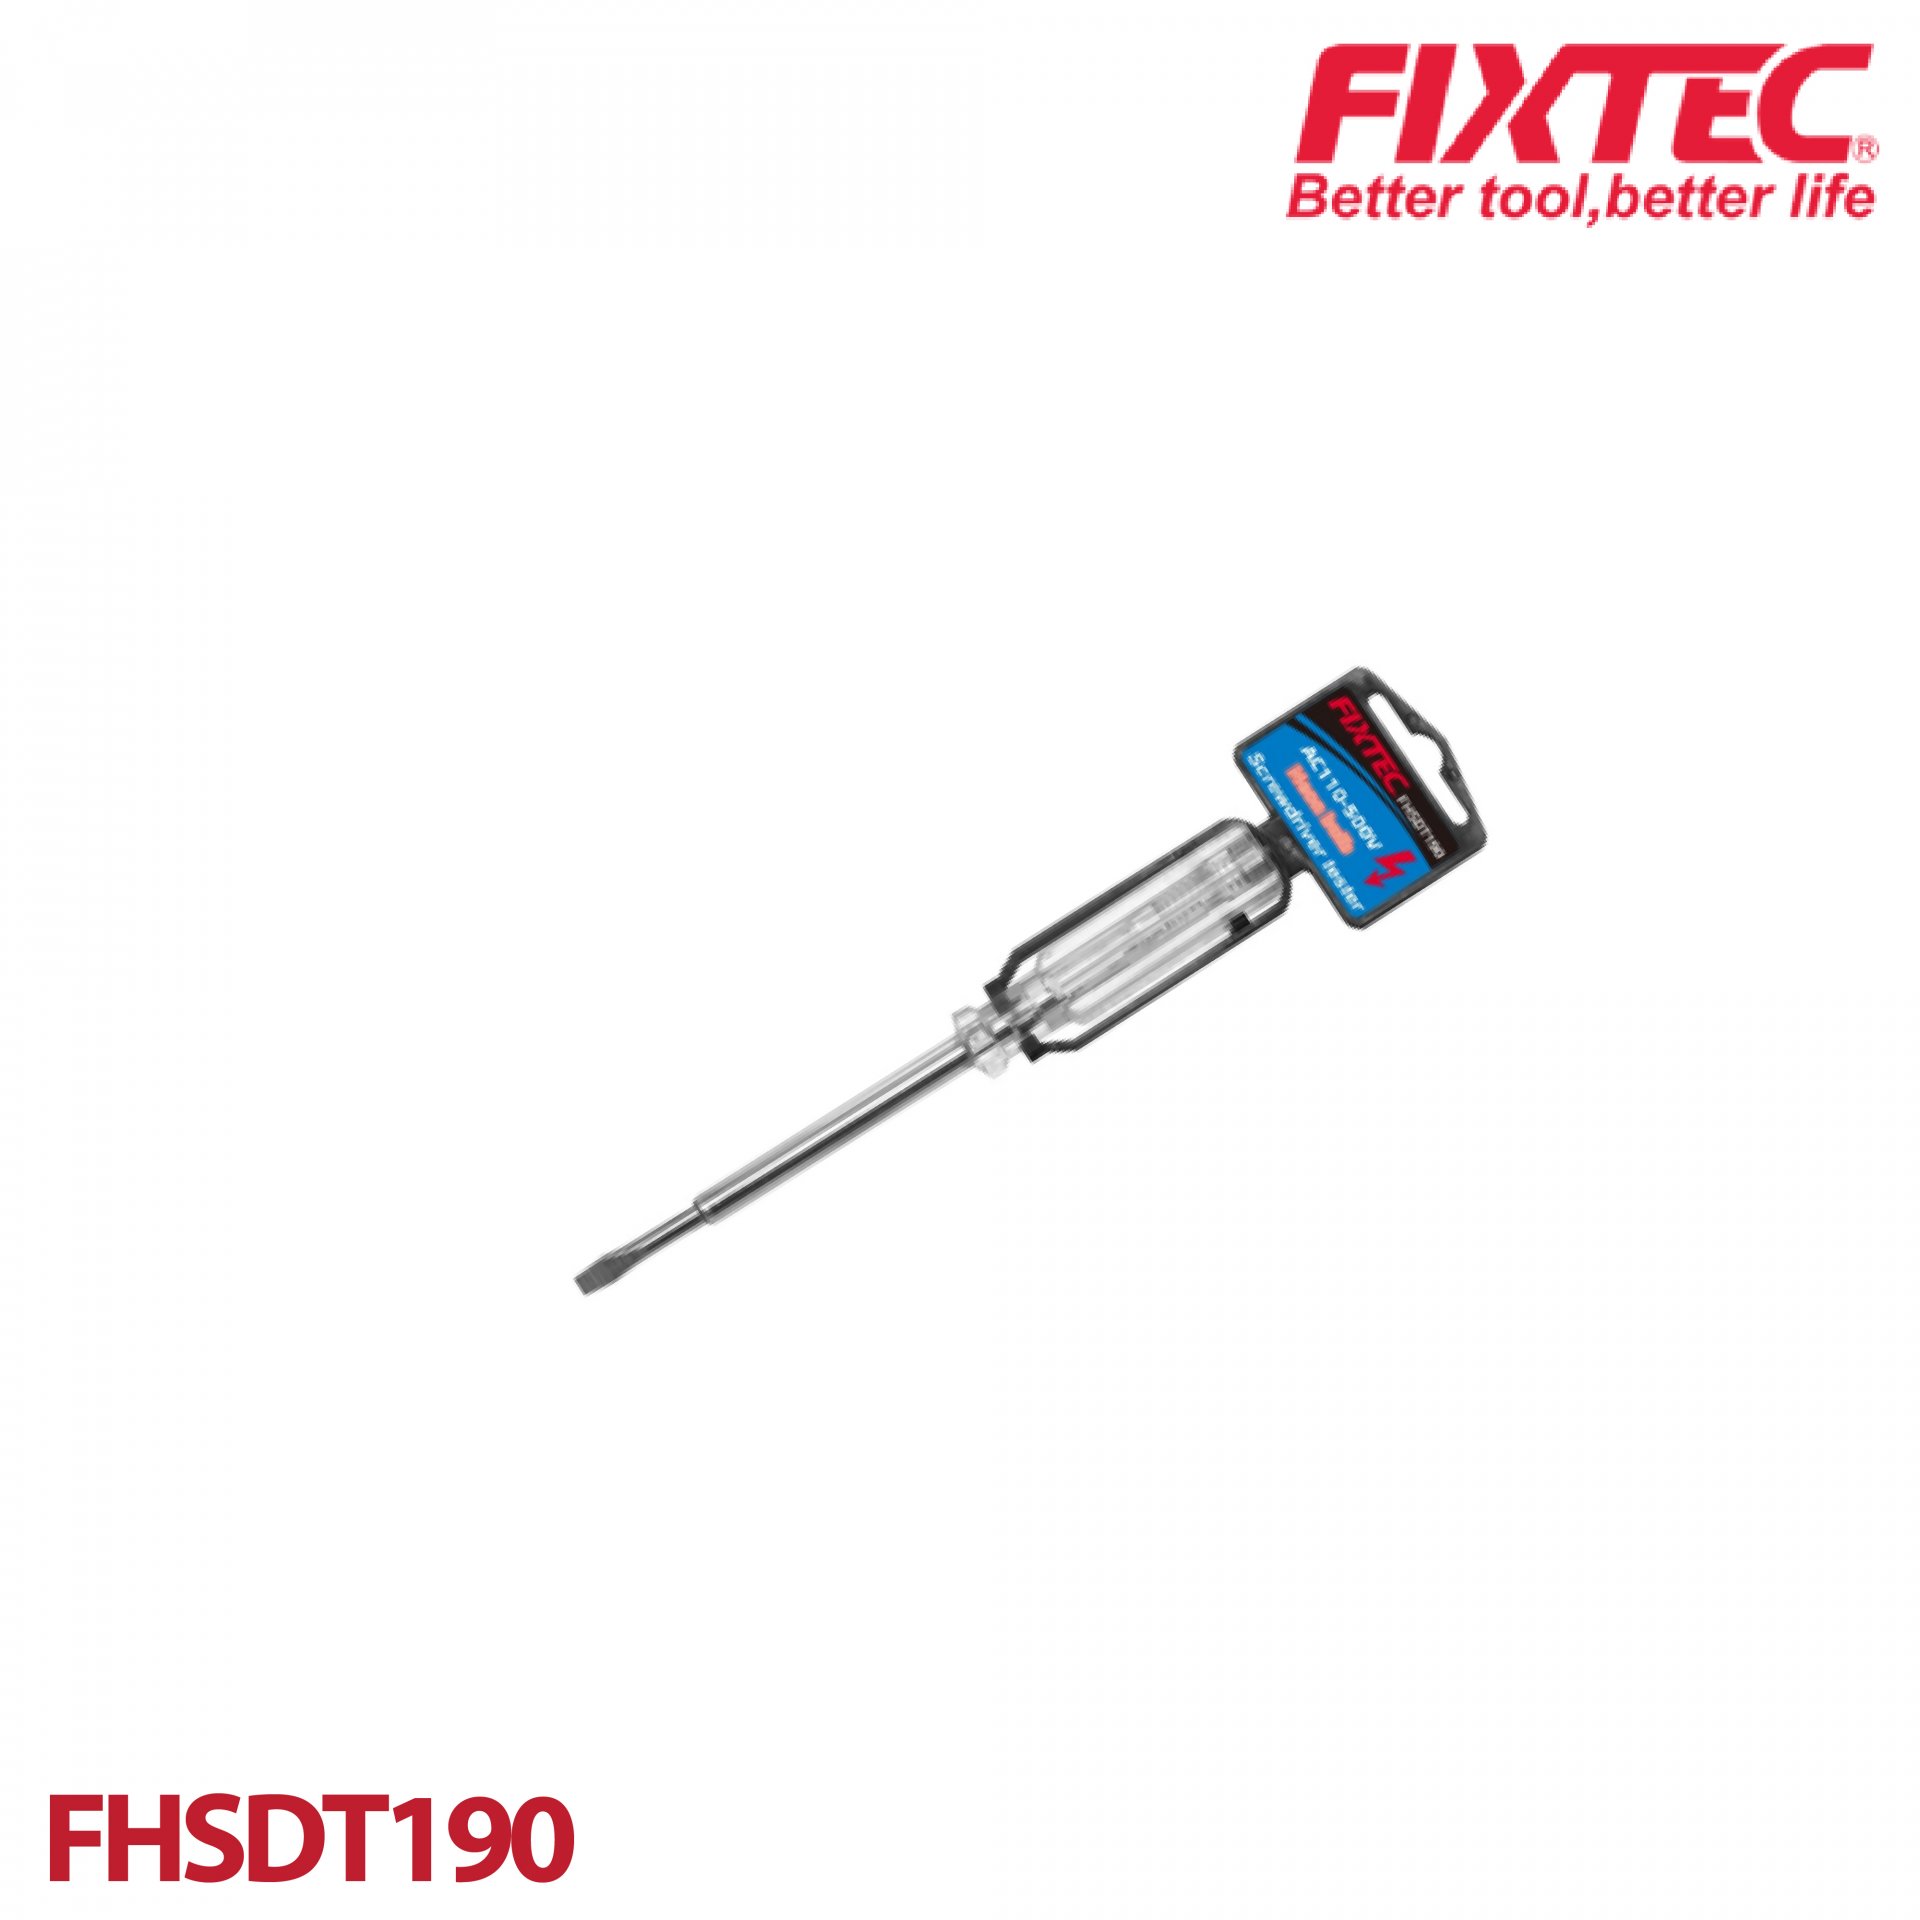 ไขควงทดลองไฟ FIXTEC FHSDT190